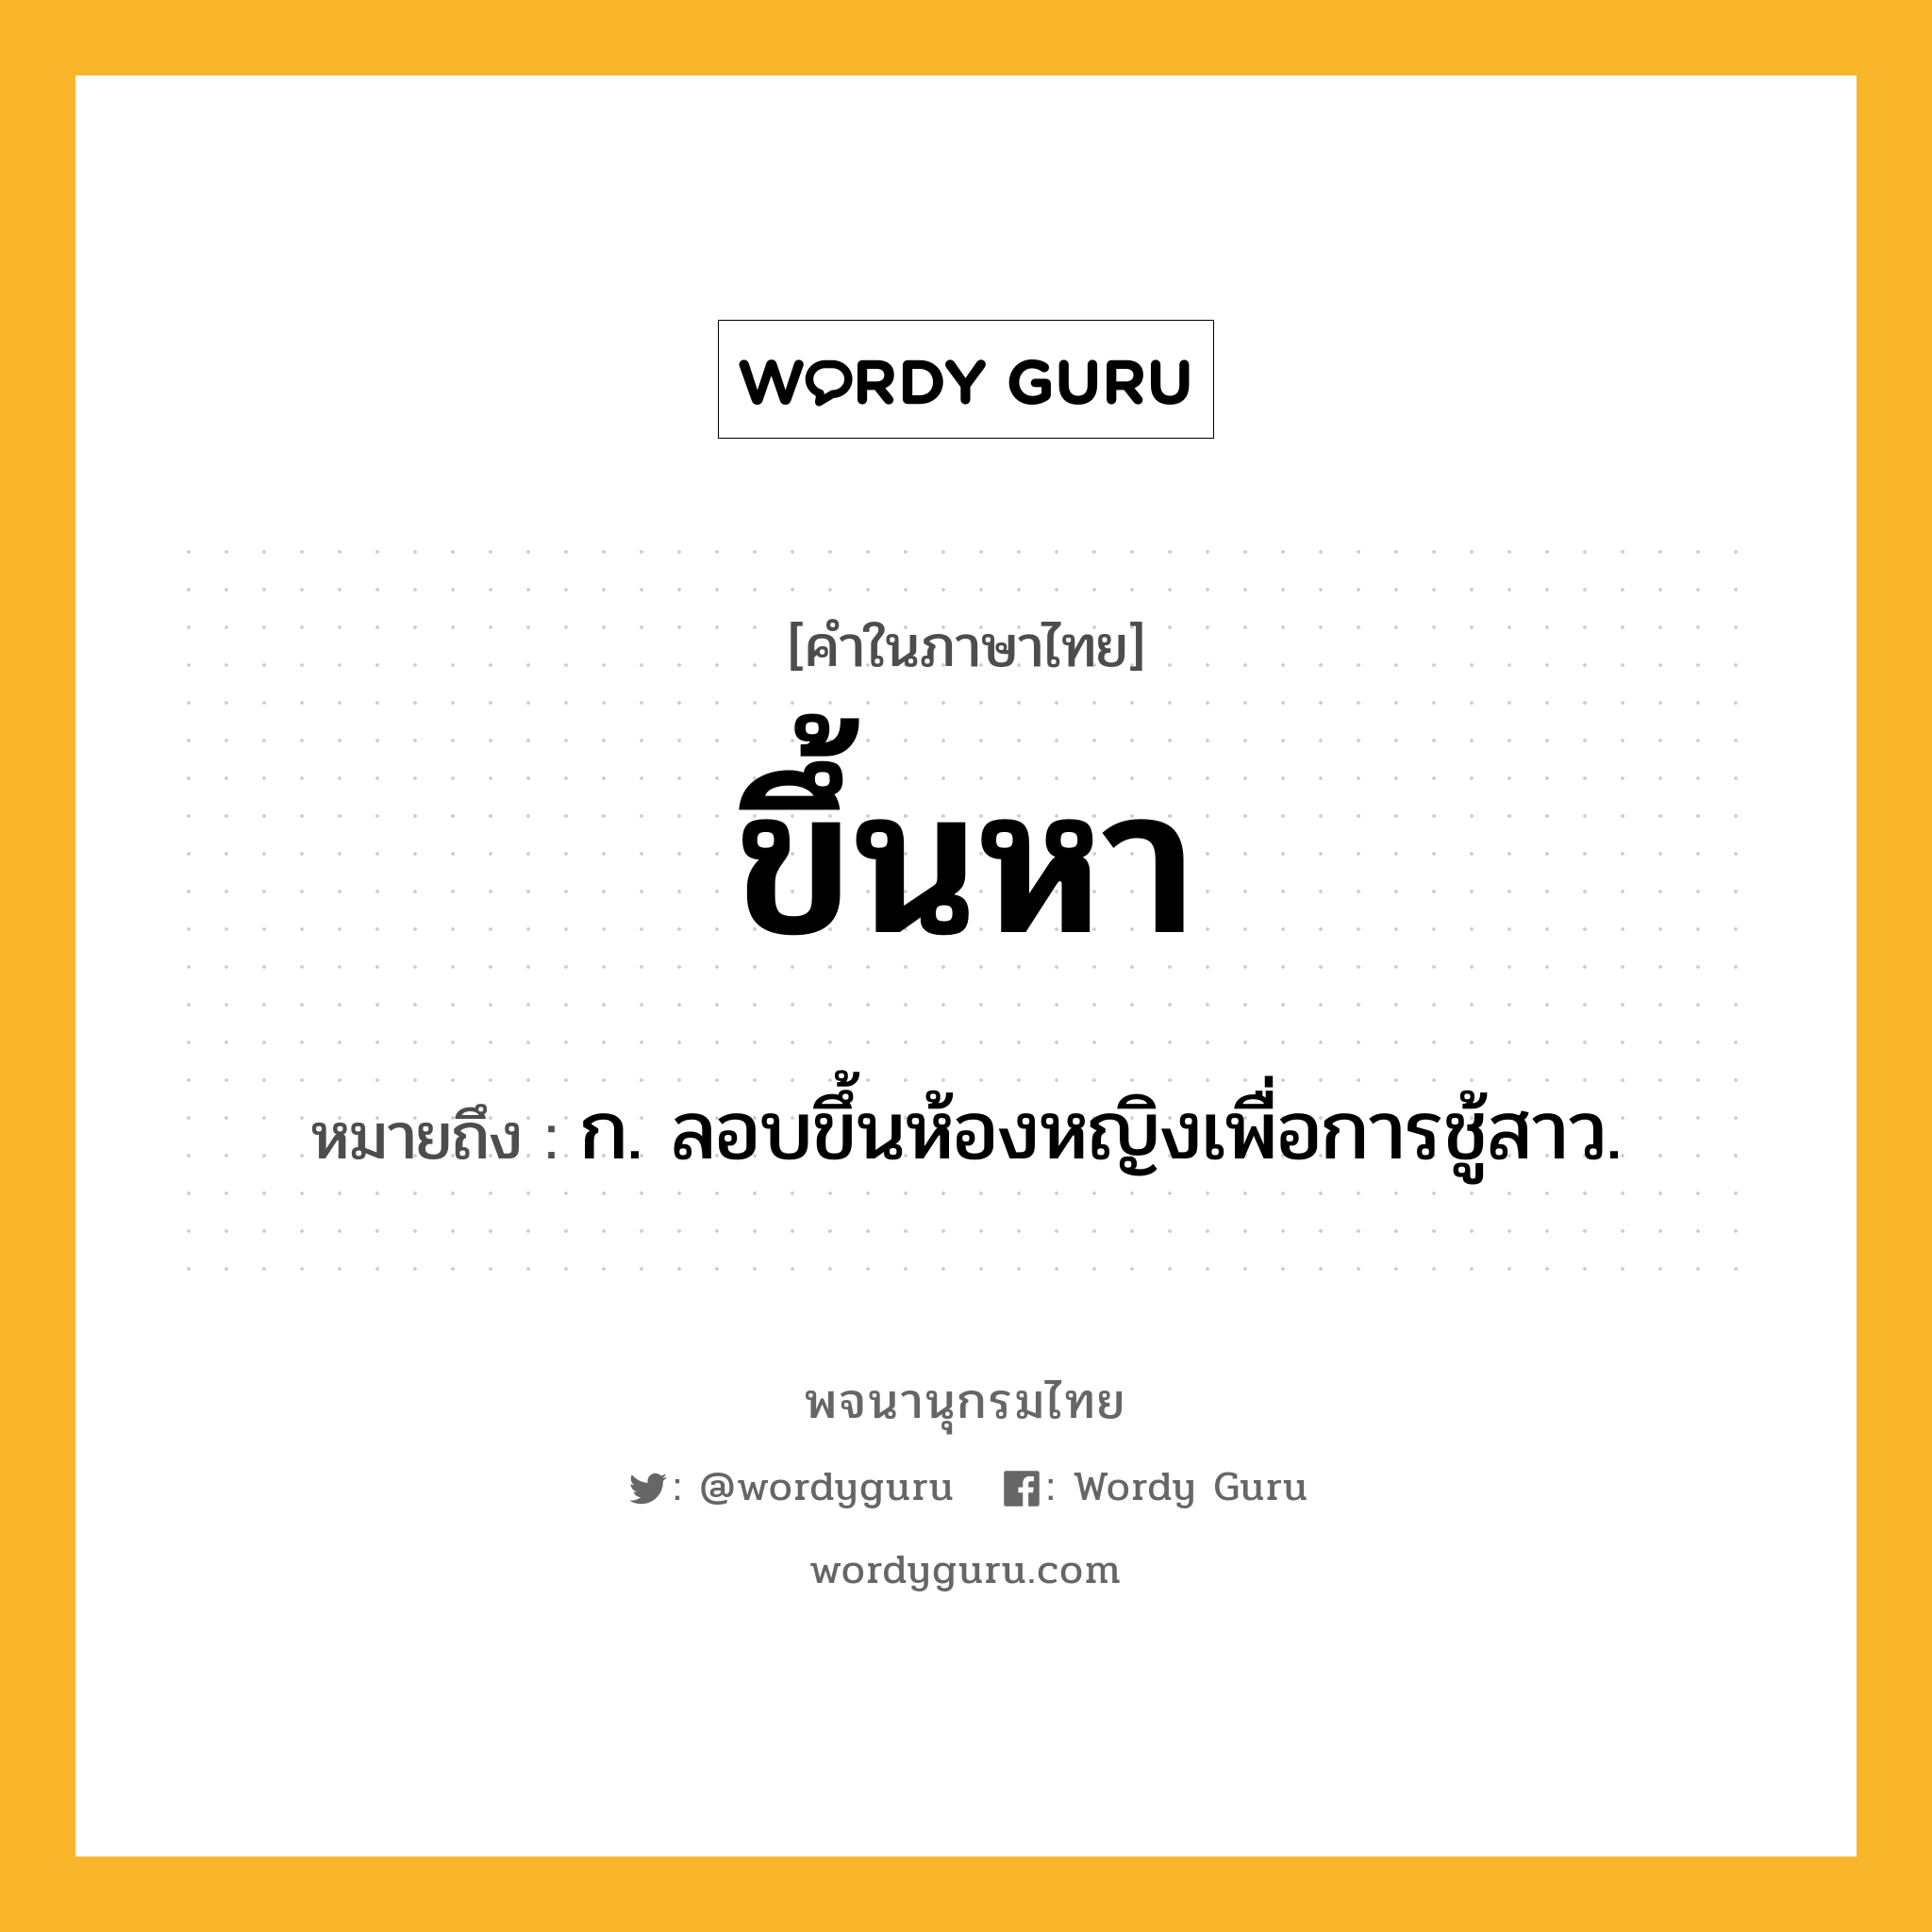 ขึ้นหา ความหมาย หมายถึงอะไร?, คำในภาษาไทย ขึ้นหา หมายถึง ก. ลอบขึ้นห้องหญิงเพื่อการชู้สาว.